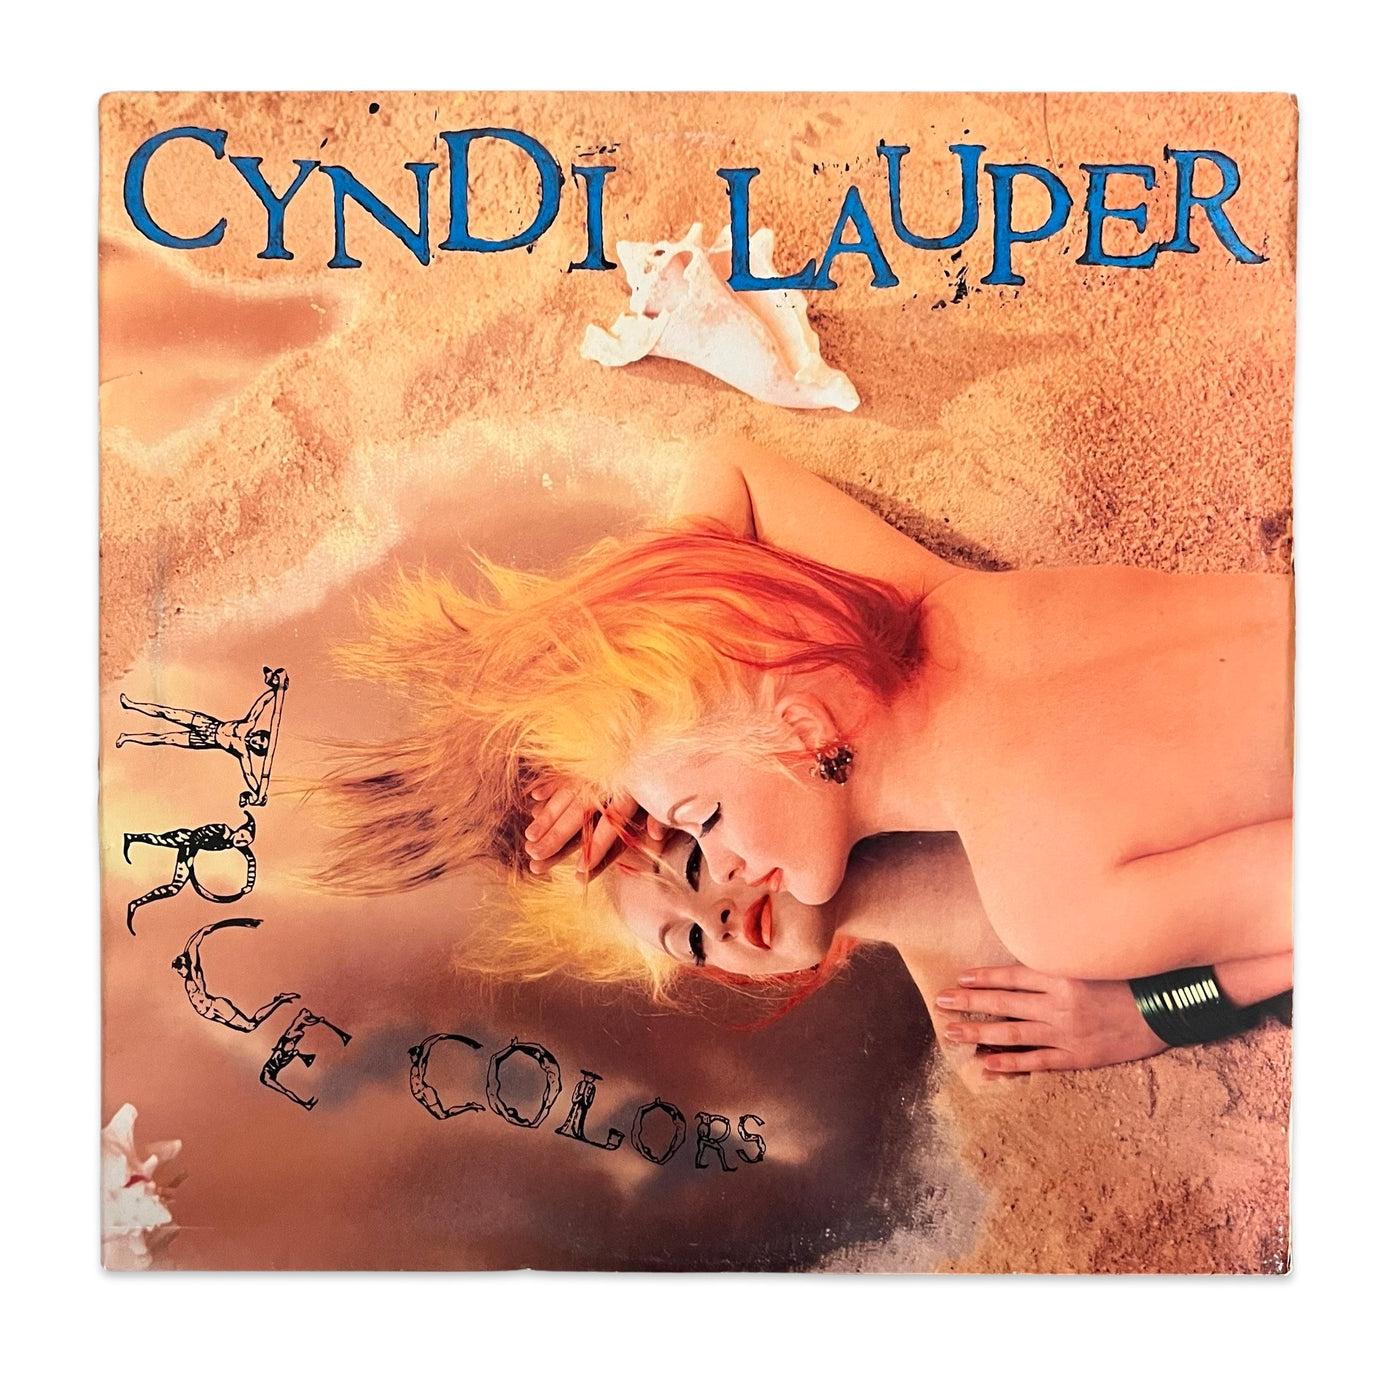 Cyndi Lauper – True Colors (1986, Pitman Pressing, Vinyl)